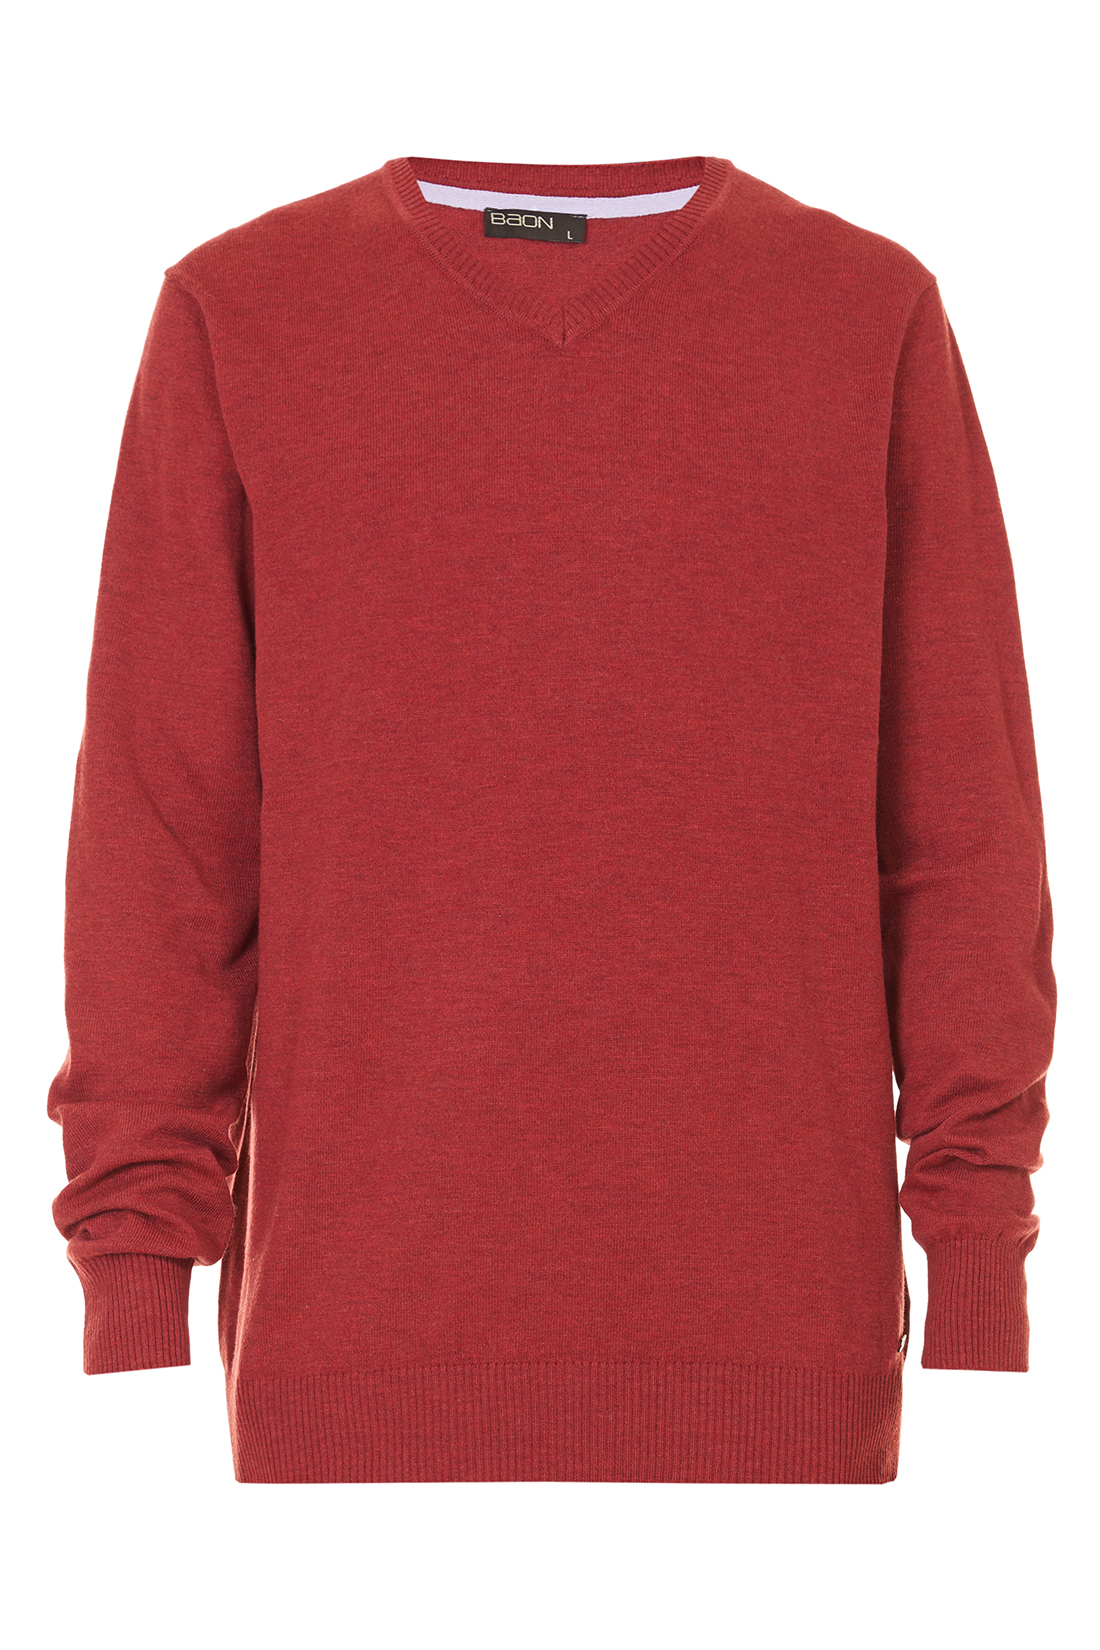 Базовый пуловер (арт. baon B637703), размер XXL, цвет red melange#красный Базовый пуловер (арт. baon B637703) - фото 3